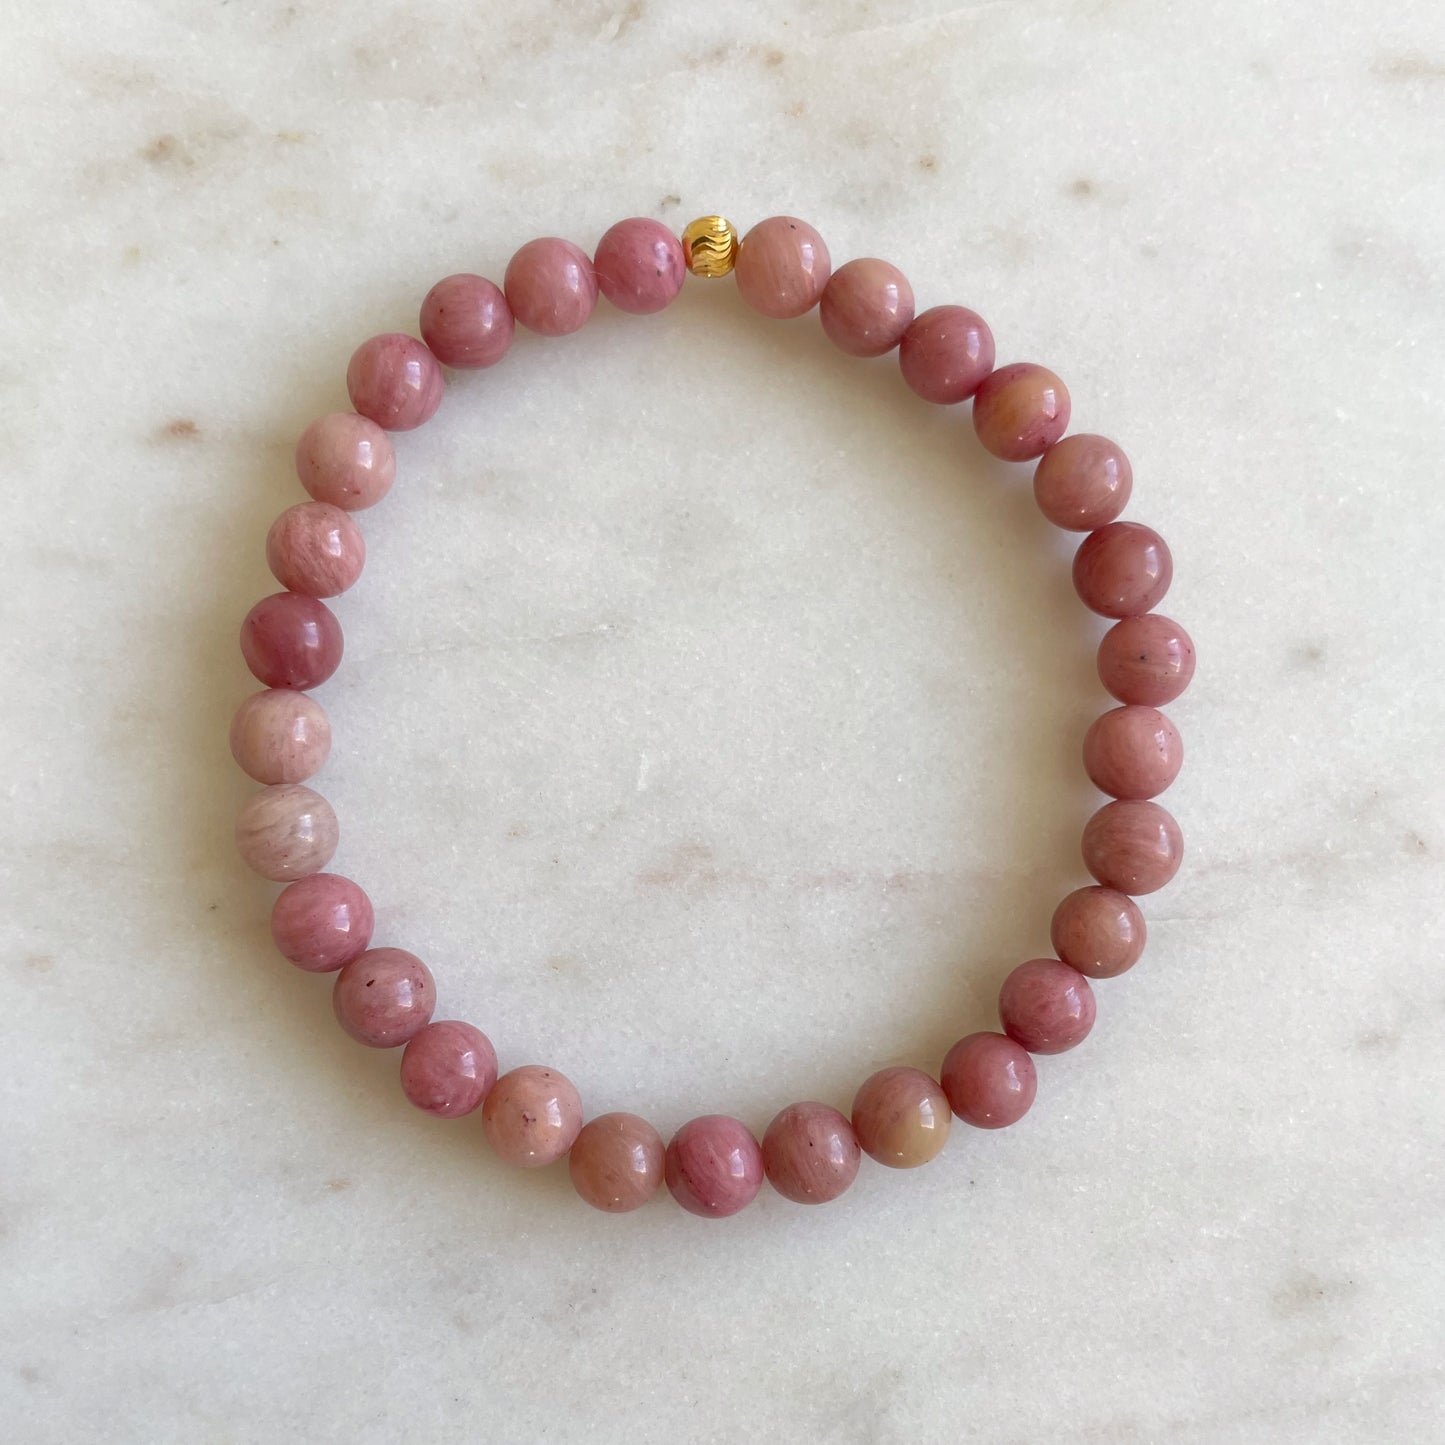 Full Moon - Rhodonite bracelet for love, healing and balance